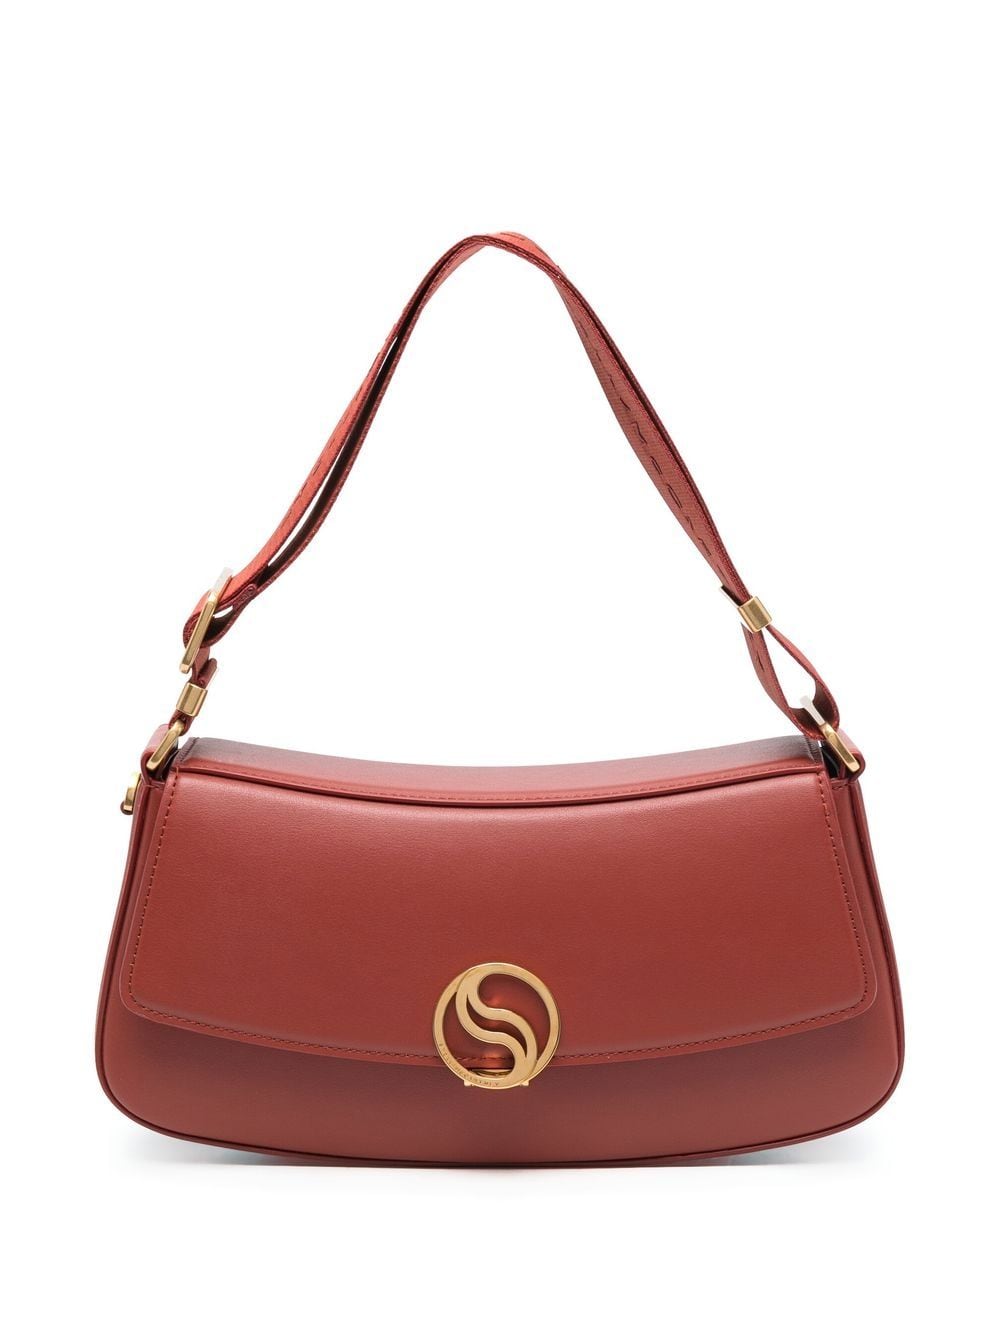 Stella McCartney S-Wave shoulder bag - Red